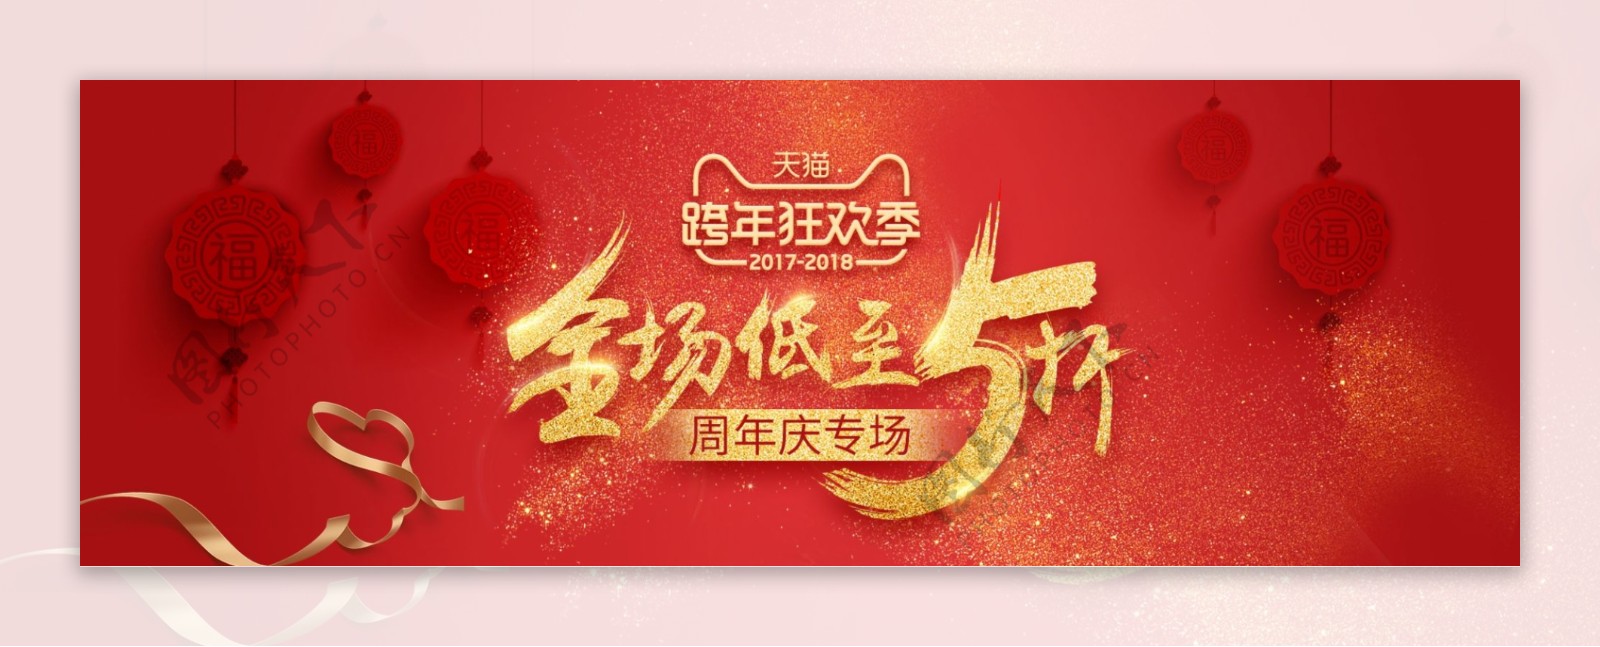 红色热闹灯笼跨年狂欢季周年庆电商淘宝海报